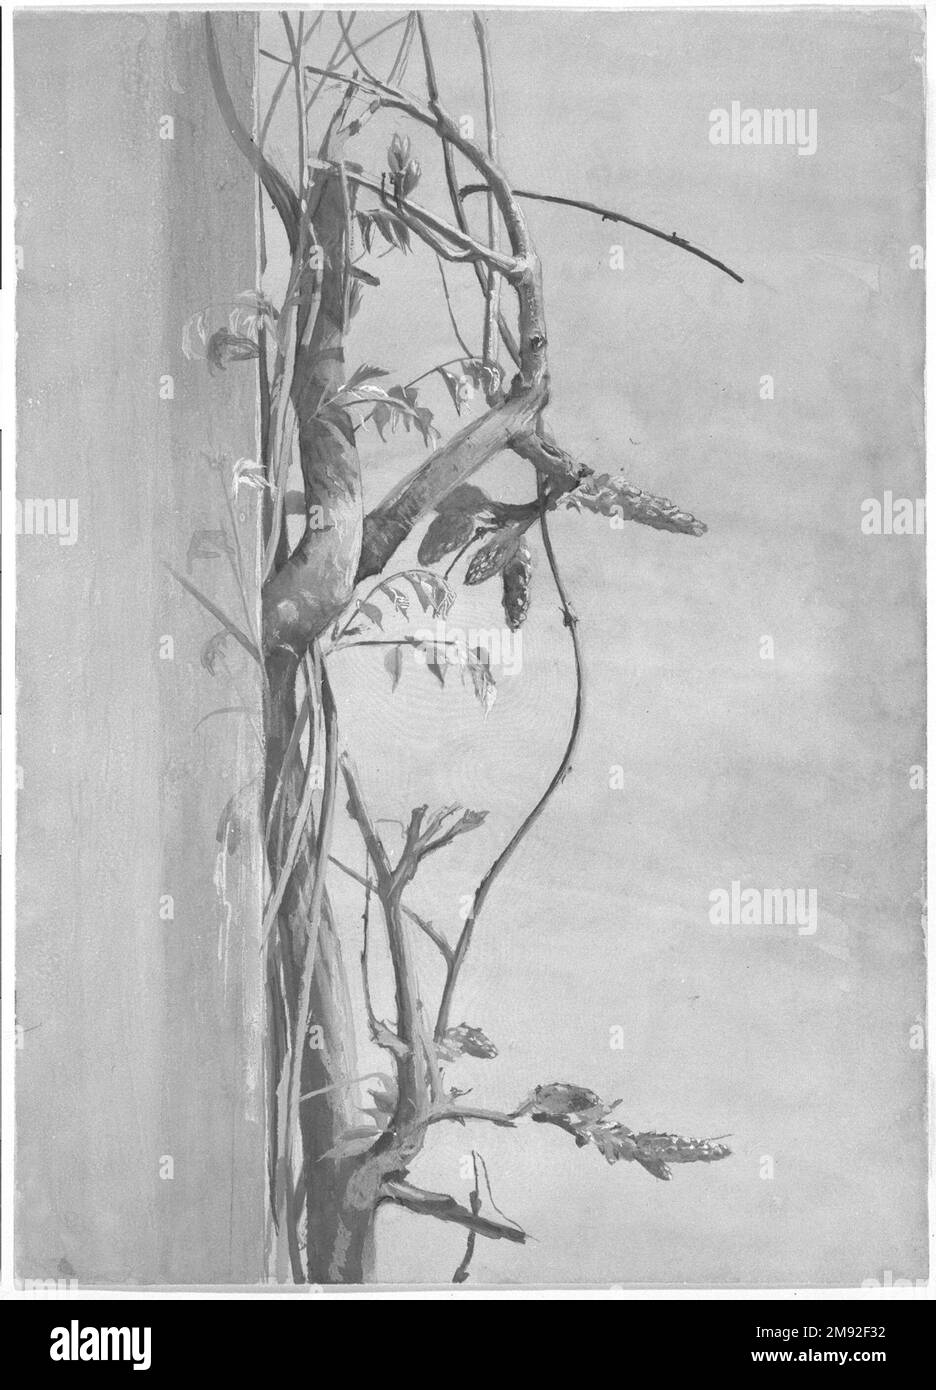 Wisteria on a Wall Fidelia Bridges (amerikanisch, 1834-1923). Wisteria on a Wall, 1870er. Aquarell über Graphit auf Papier, 14 x 10 1/16 Zoll (35,6 x 25,6 cm). Das Zeichnen und Malen in Aquarell war ein wichtiger Teil der sanften weiblichen Kultur im 19. Jahrhundert. Fidelia Bridges, ein Brooklynit, erreichte einen ungewöhnlichen Erfolg als professionelle Künstlerin und wurde bekannt für ihre detaillierten und dekorativen Aquarelle von Blumen und Vögeln. Die genaue Beobachtung des Pflanzenlebens durch Bridges – ein Thema, das von den amerikanischen Ruskinianern besonders geschätzt wird – zeigt sich in diesem sorgfältig artikulierten Hengst Stockfoto